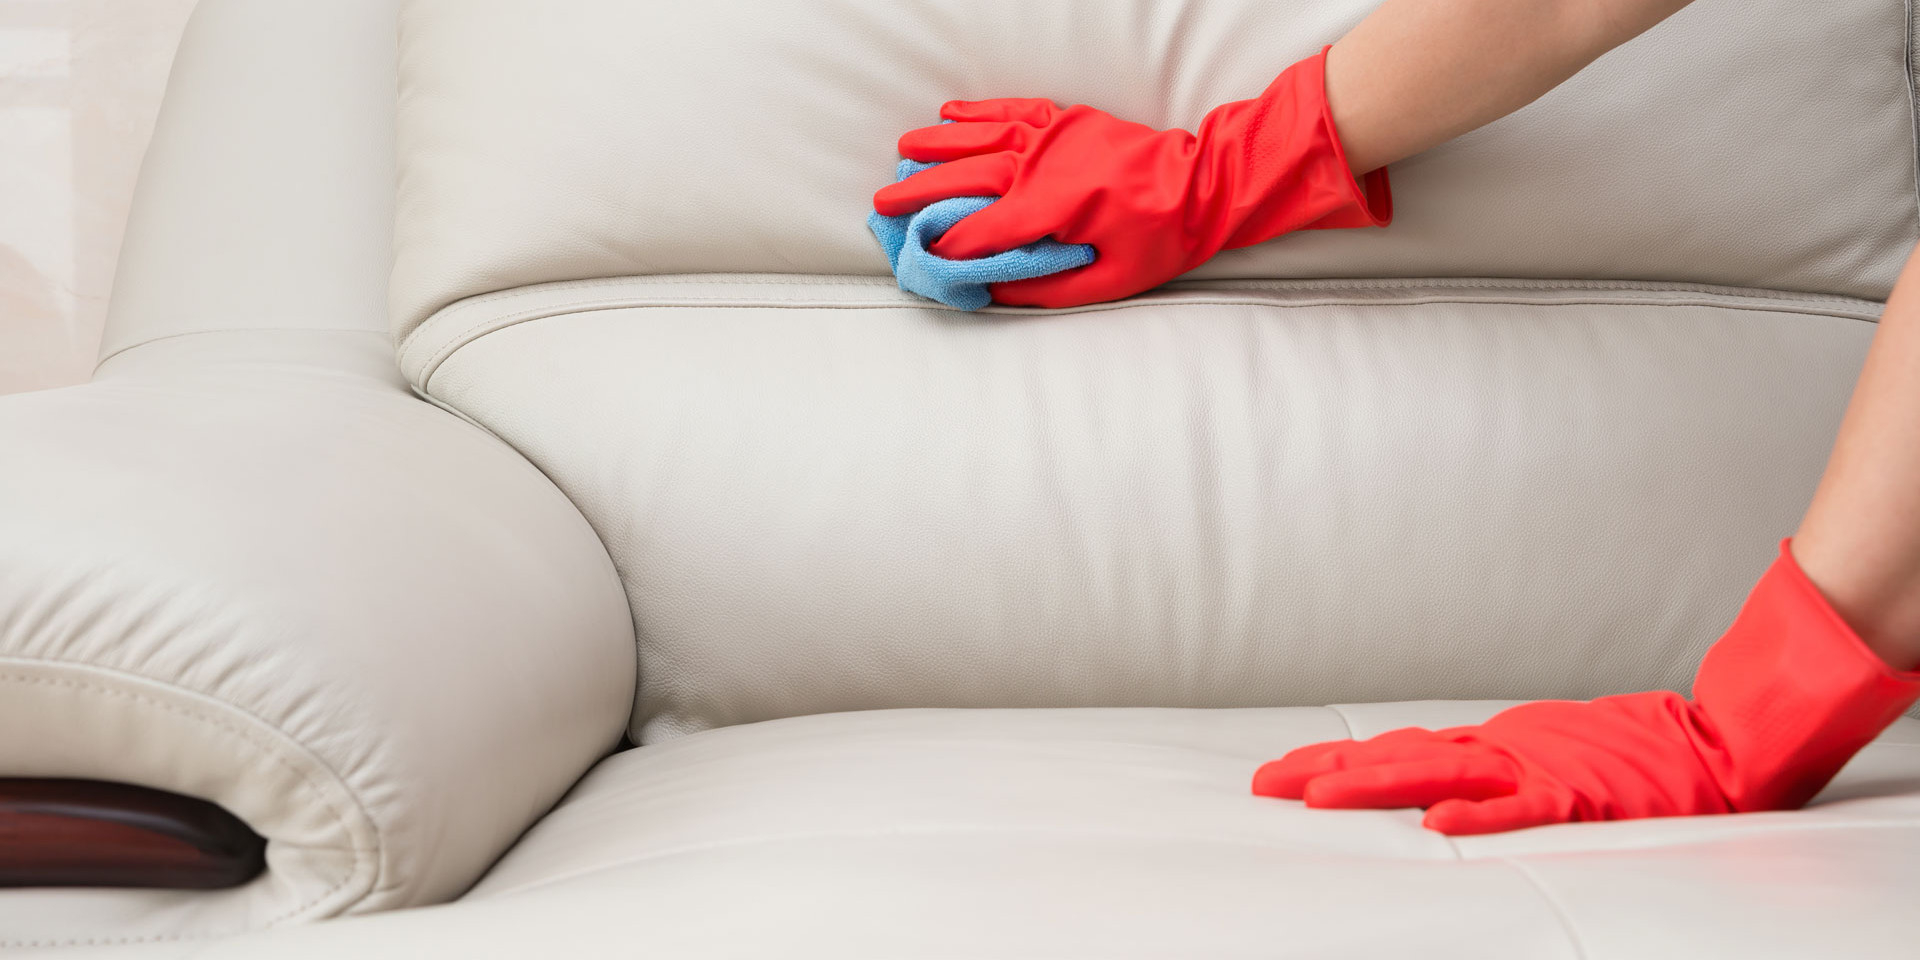 чистка дивана мыльно-нашатырным раствором